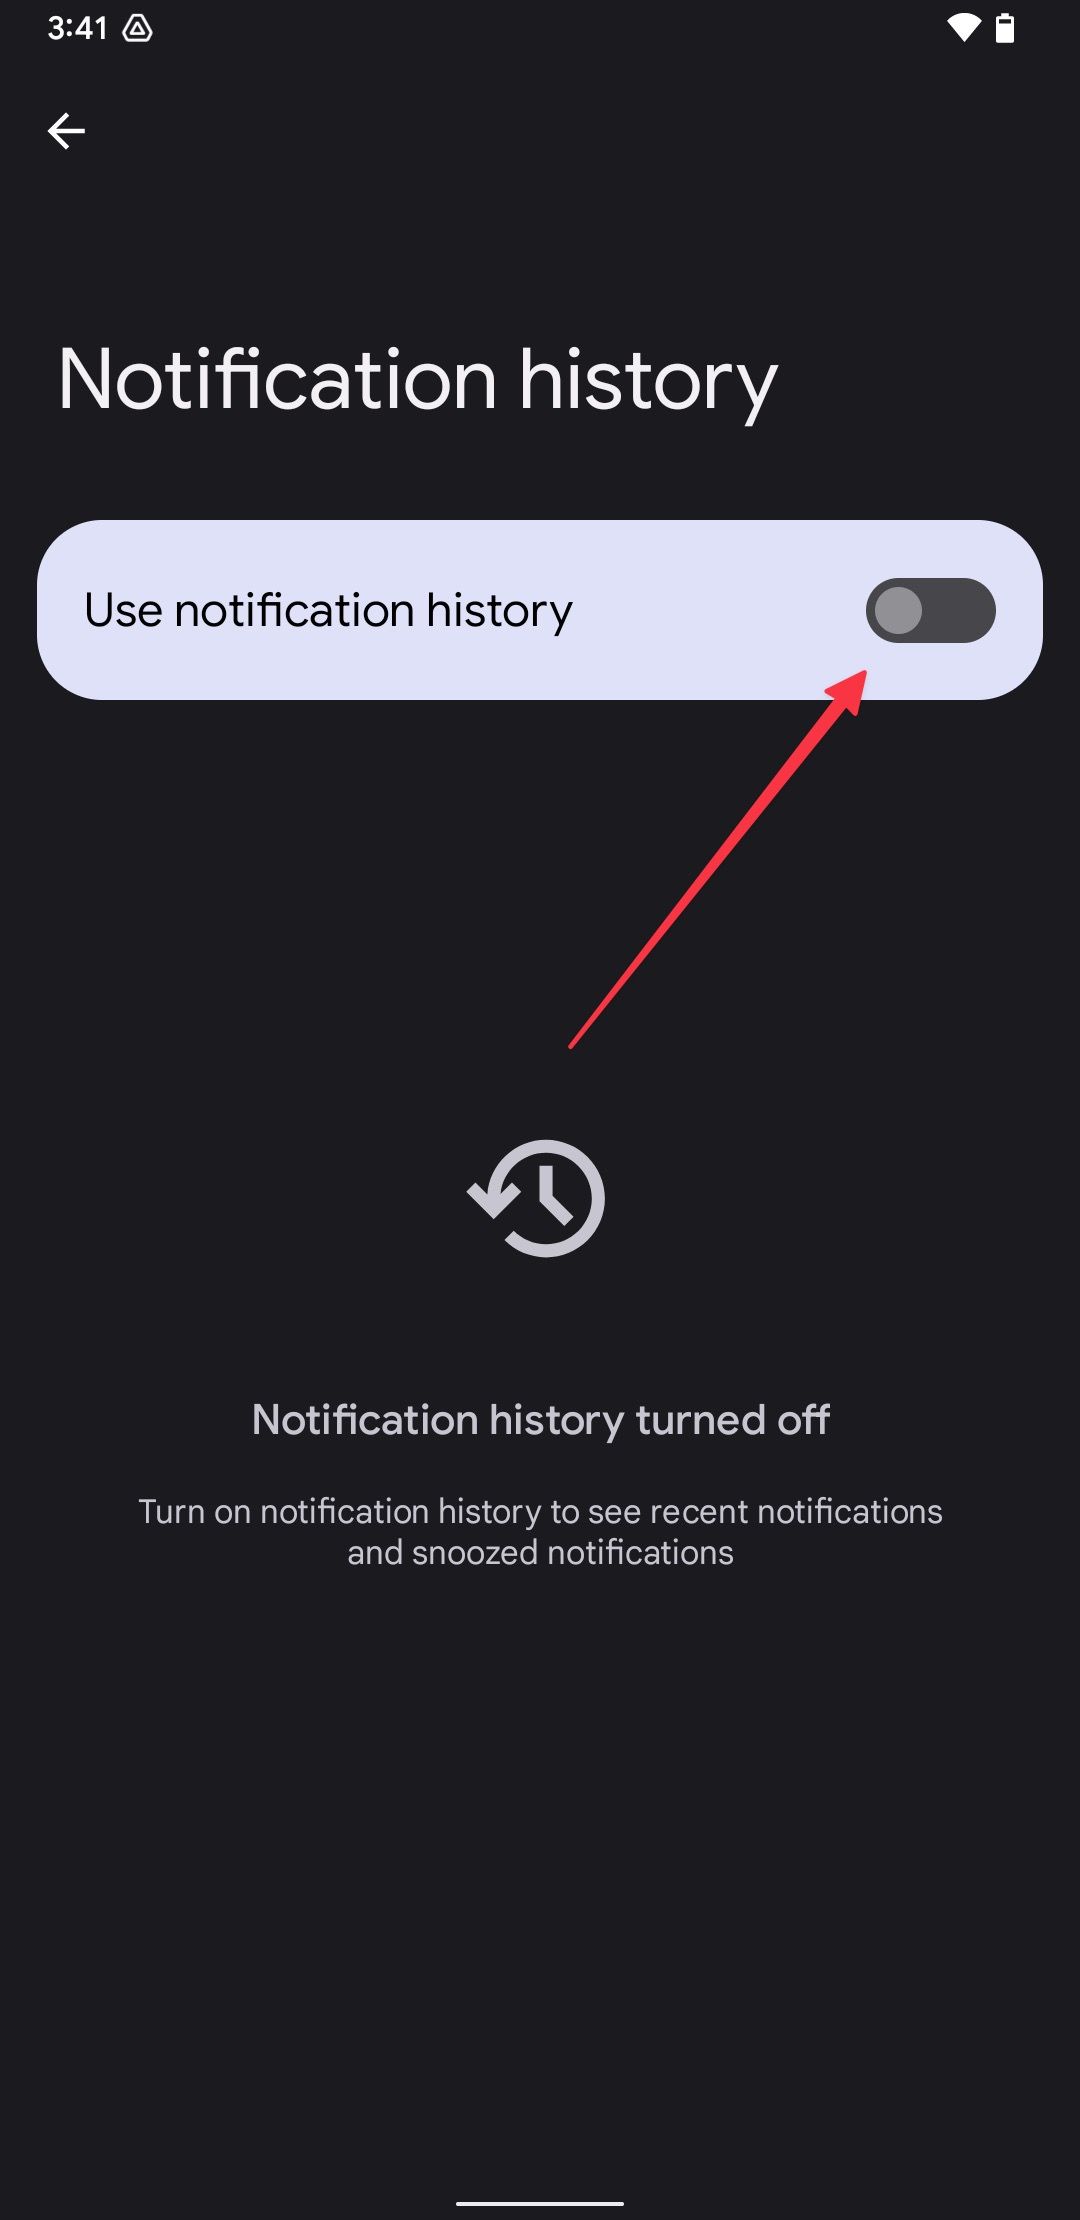 As configurações do histórico de notificações em um telefone Google Pixel com uma seta vermelha apontando para o botão Usar histórico de notificações